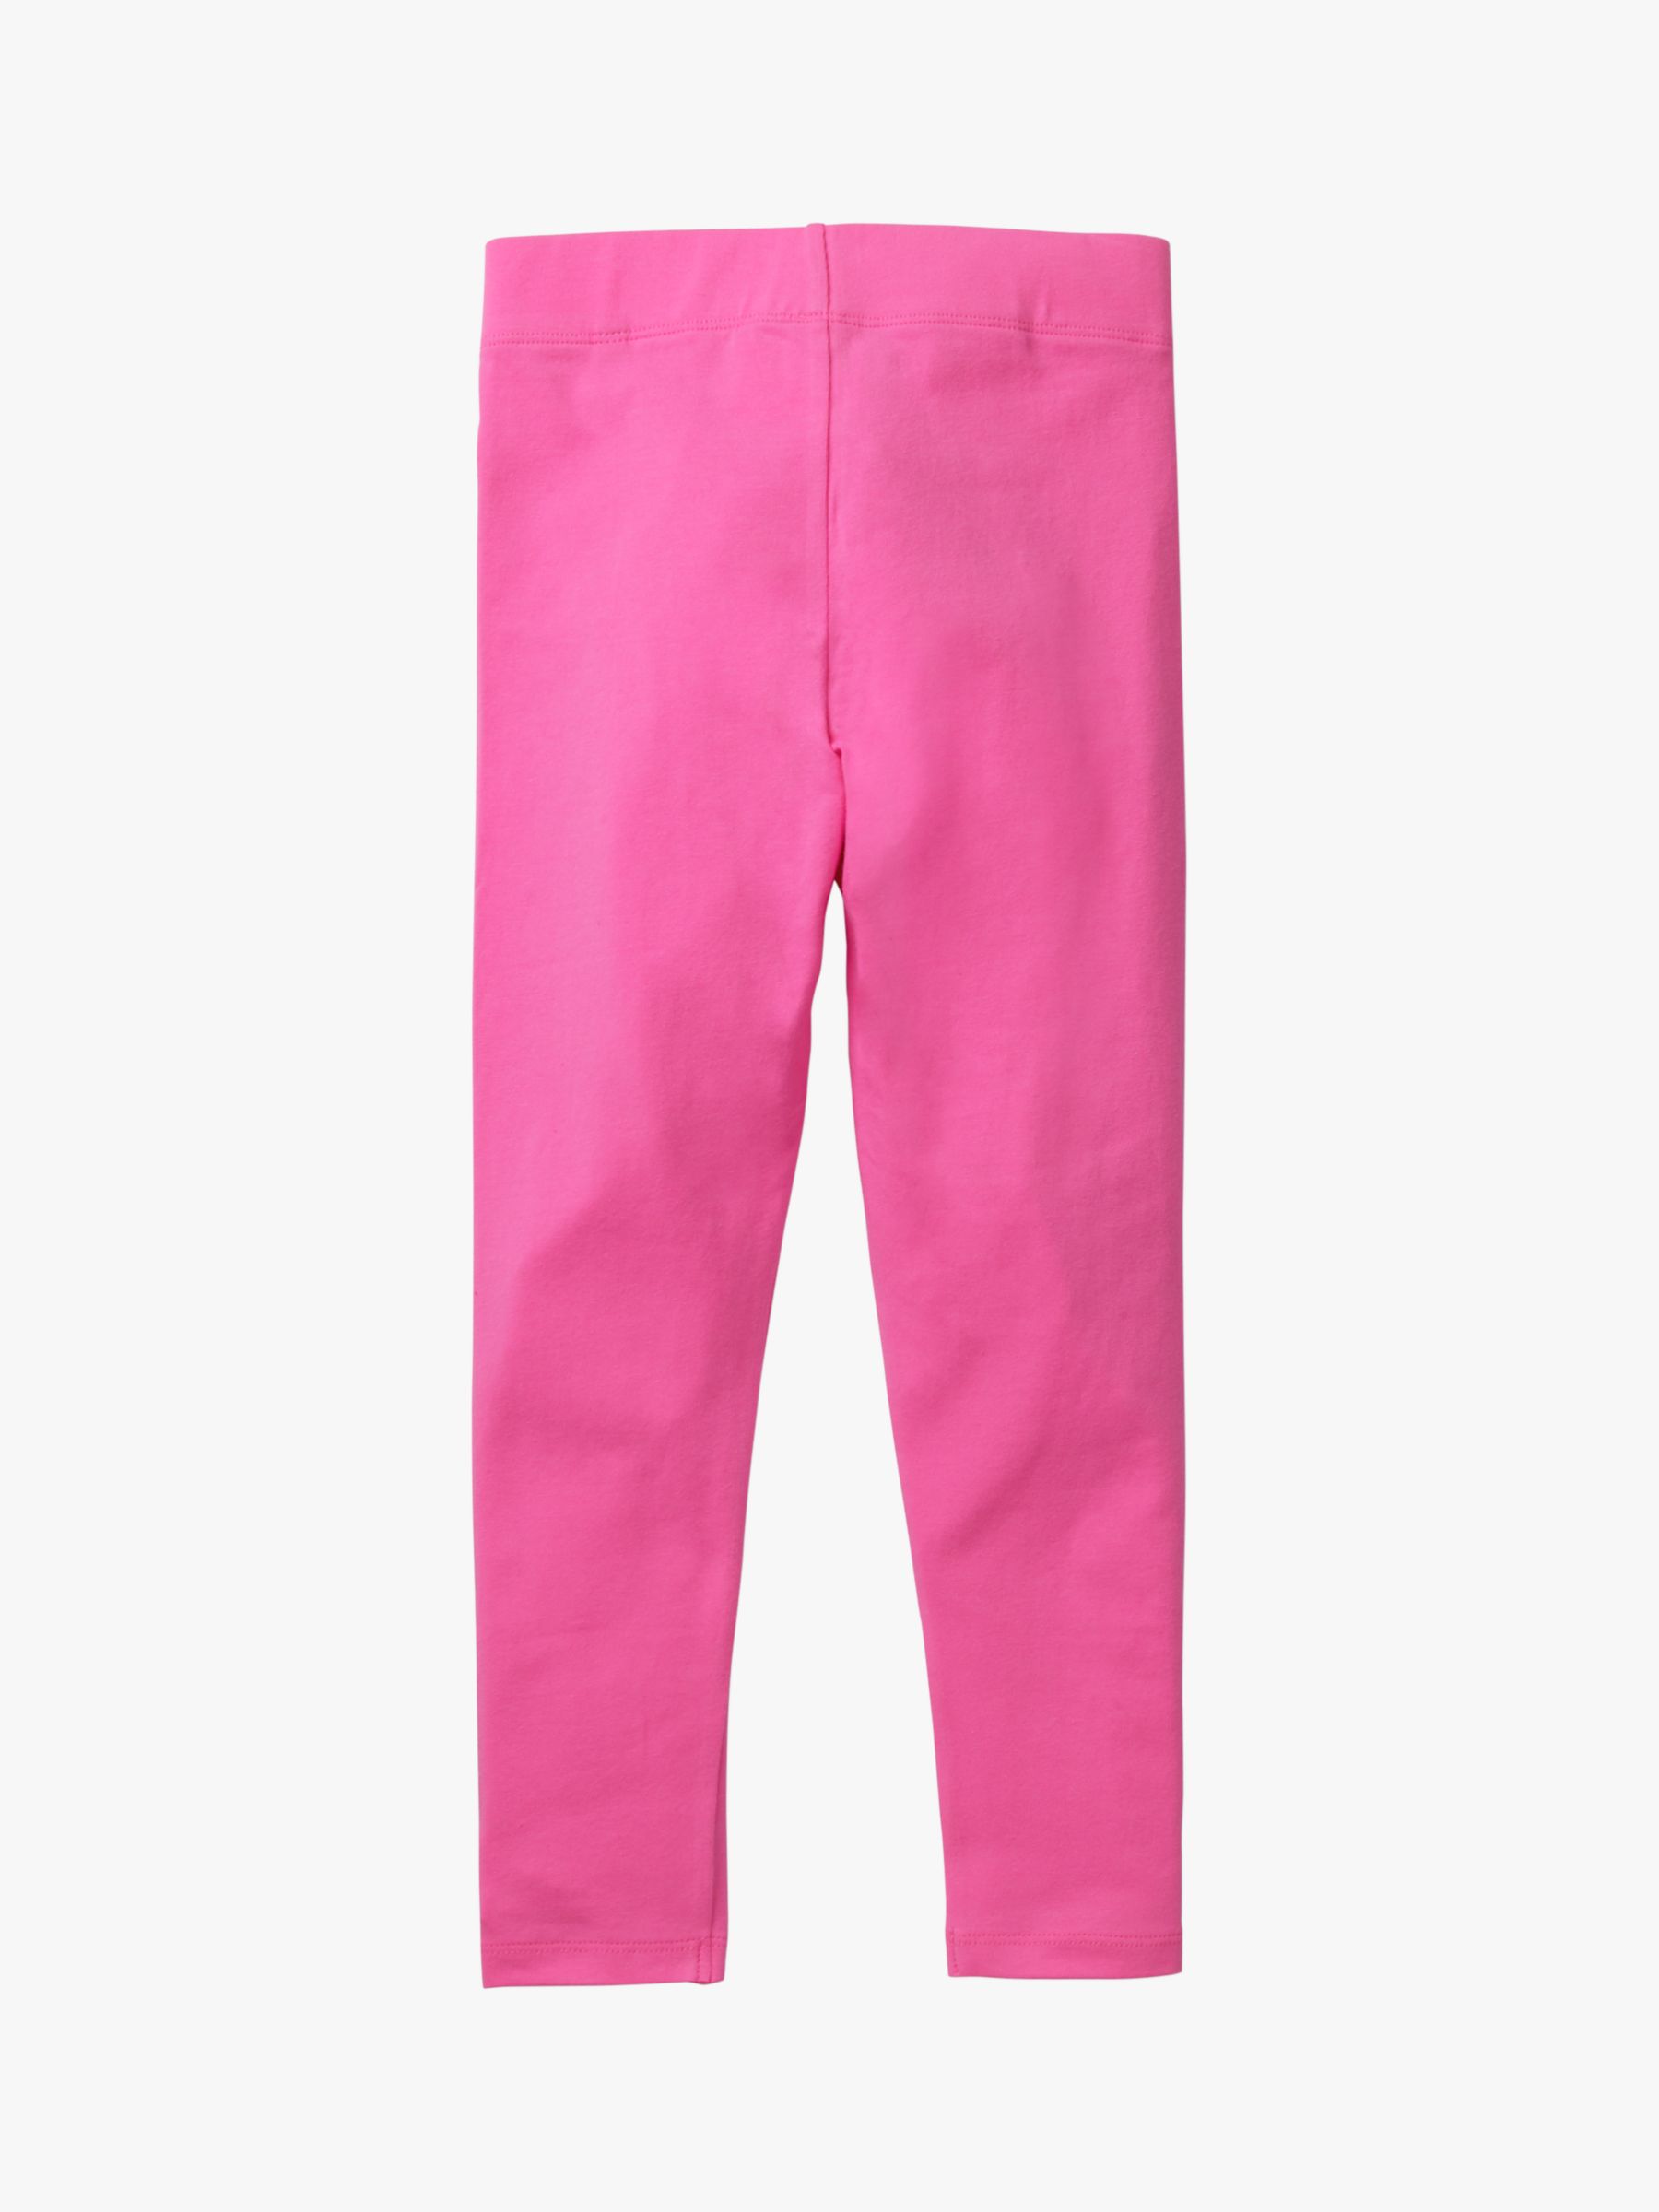 Mini Boden Girls' Elephant Applique Leggings, Tickled Pink